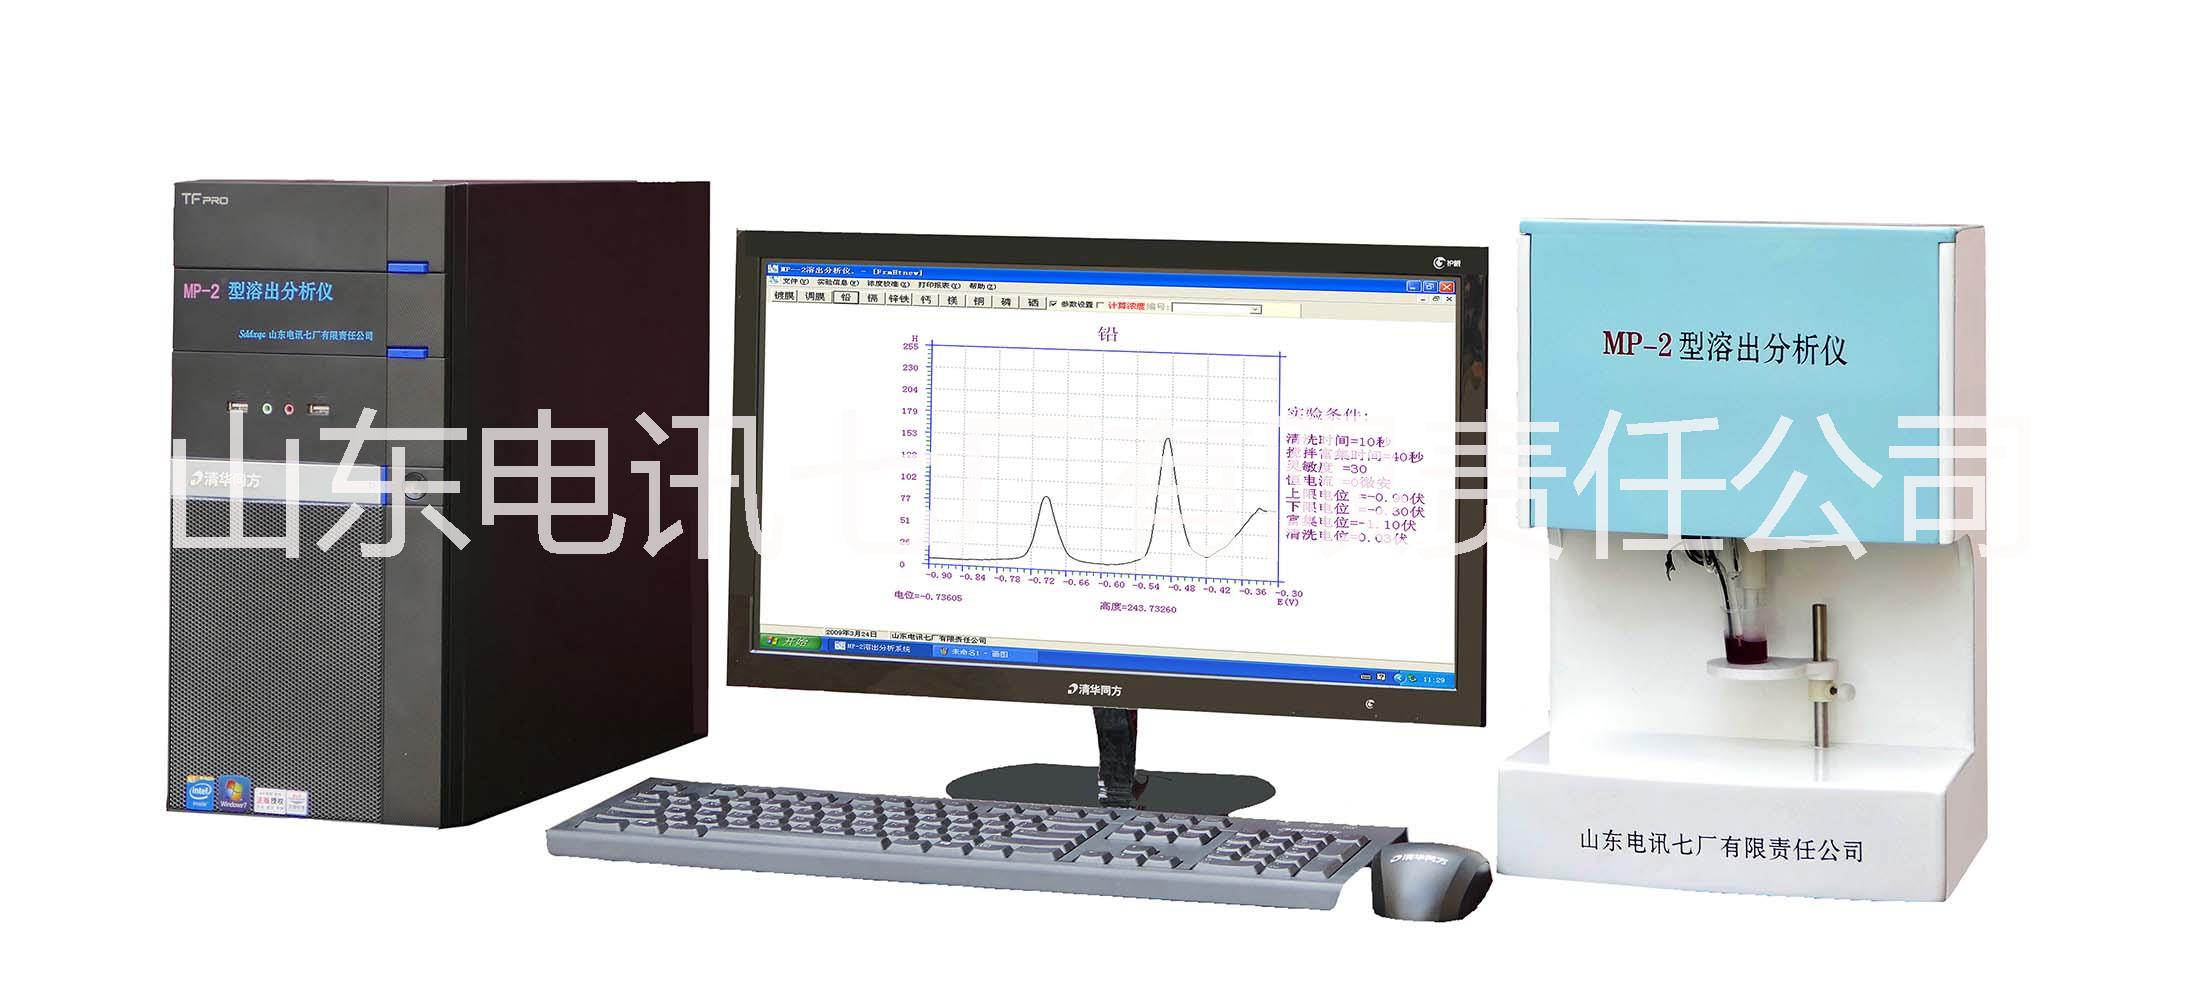 MP-2型溶出分析仪血铅专用型血液尿液检测分析仪微量元素分析仪